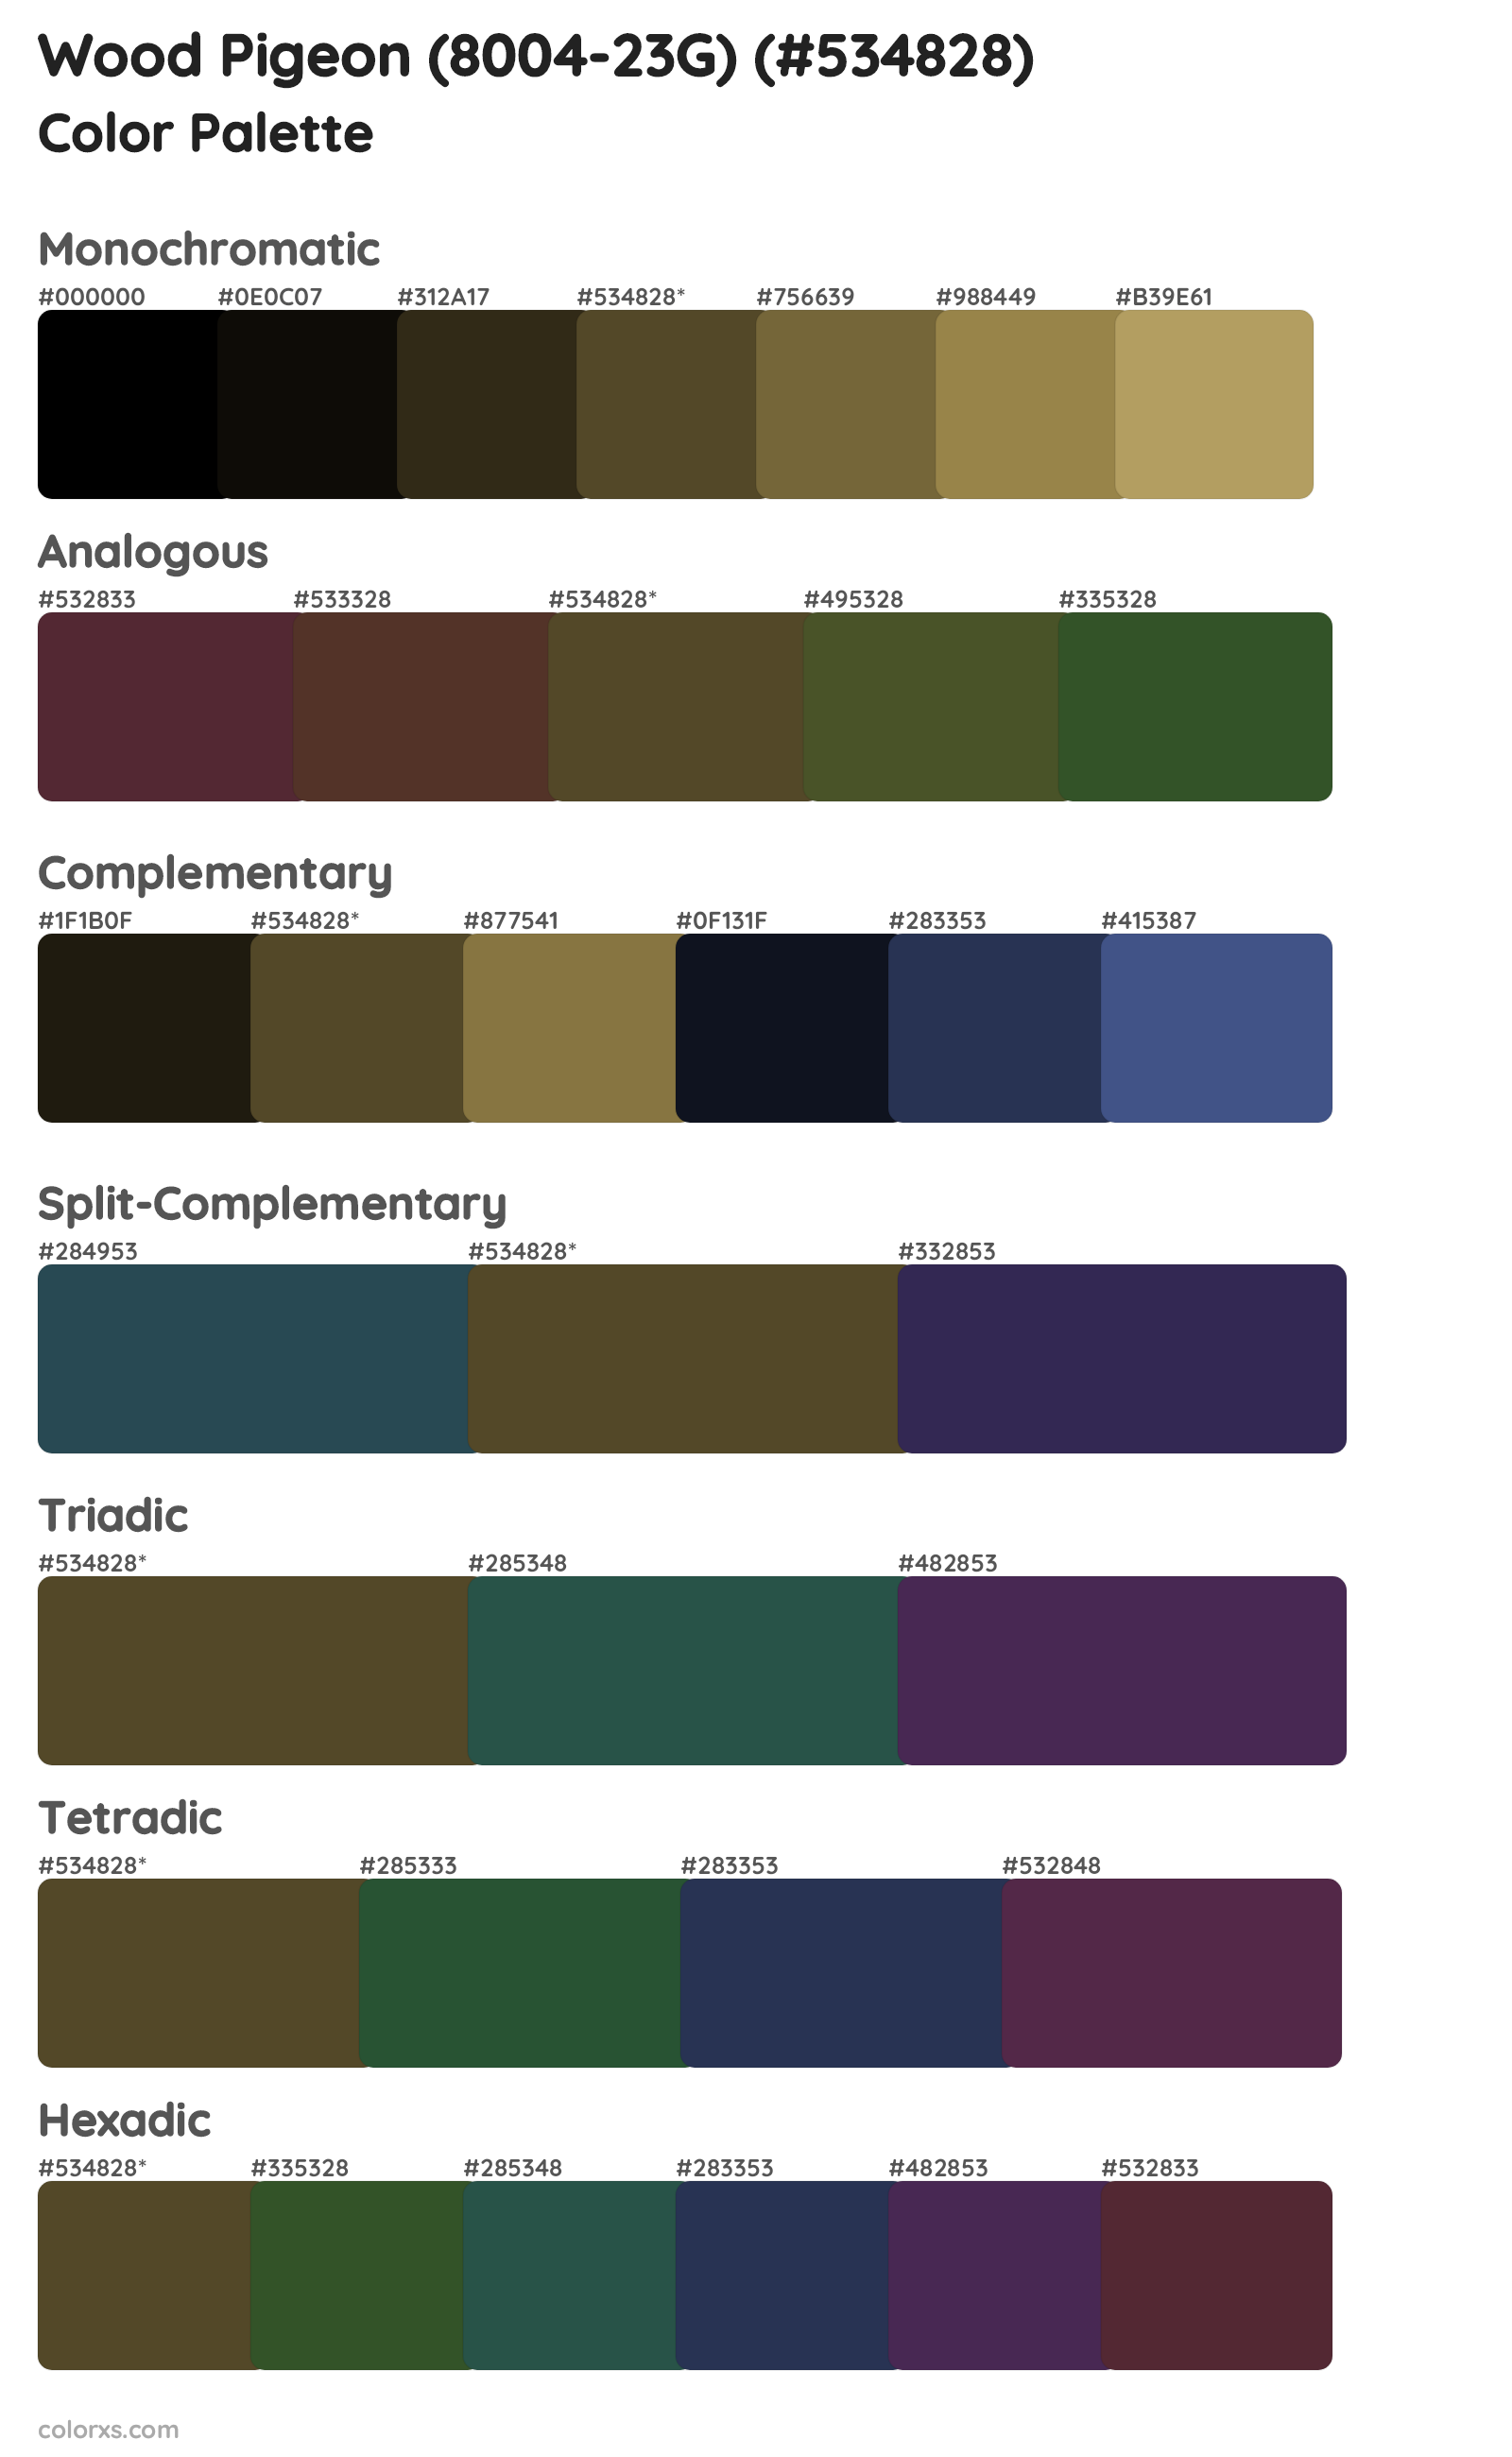 Wood Pigeon (8004-23G) Color Scheme Palettes